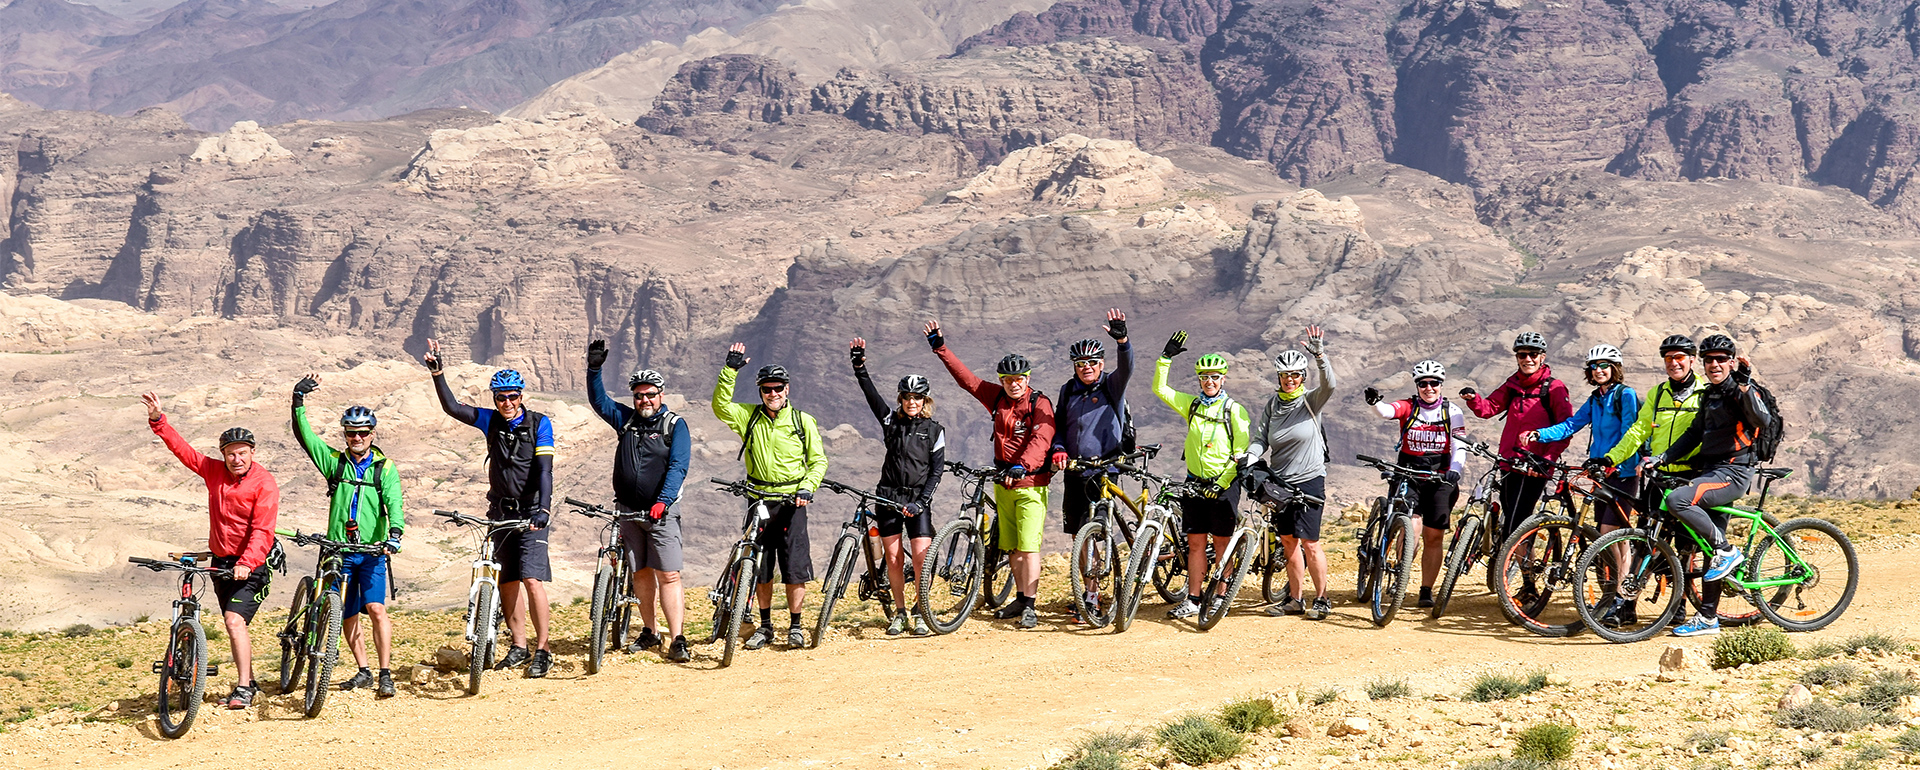 Bike Adventure Tours weiterempfehlen